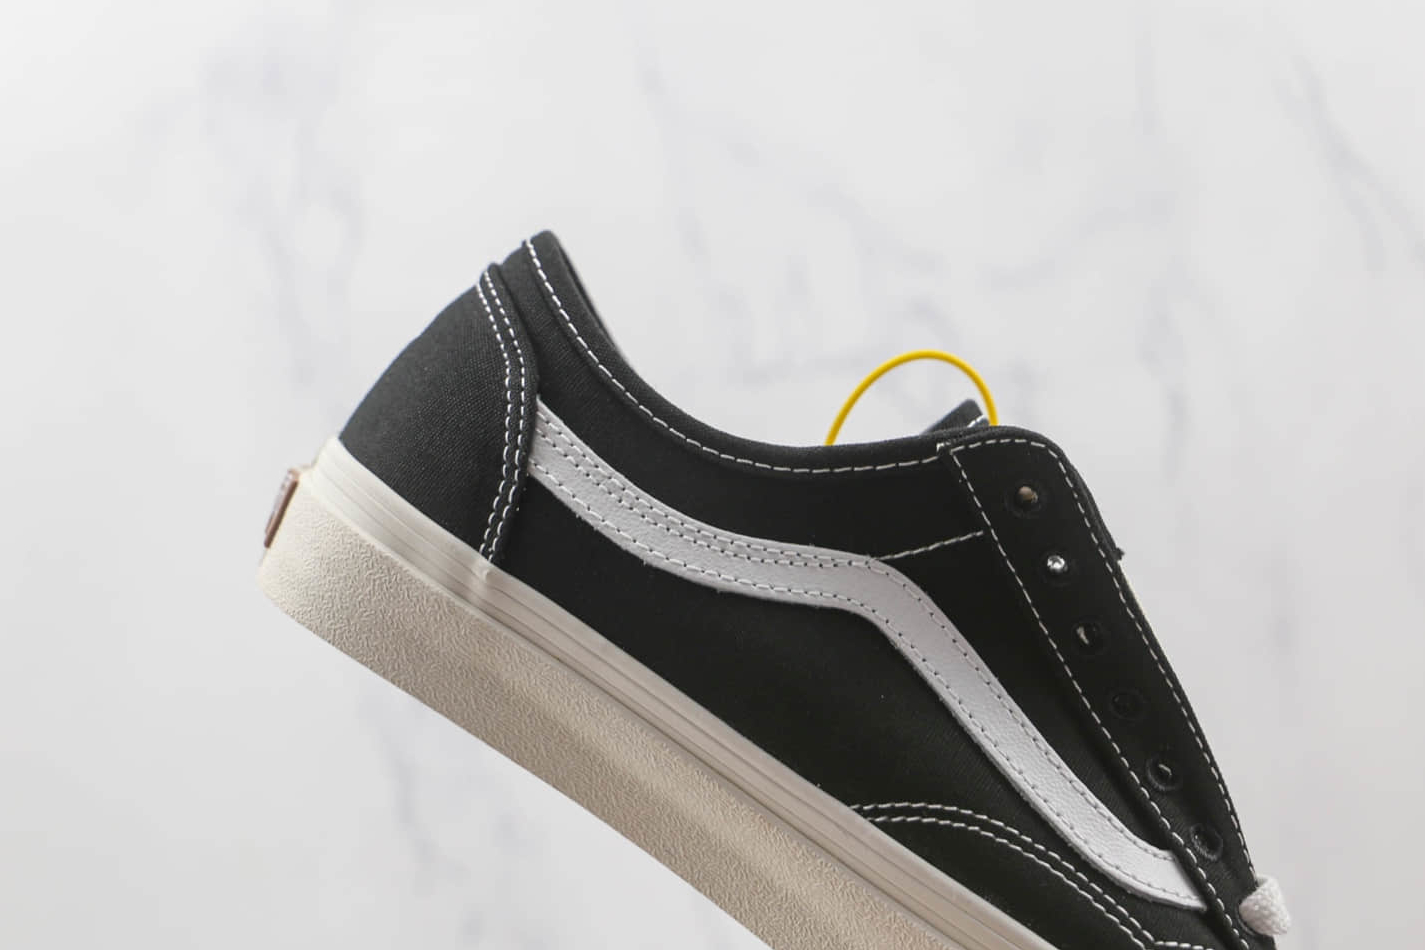 Vans Old Skool Tapered Low-Top Sneakers Black White - Trendy Style!